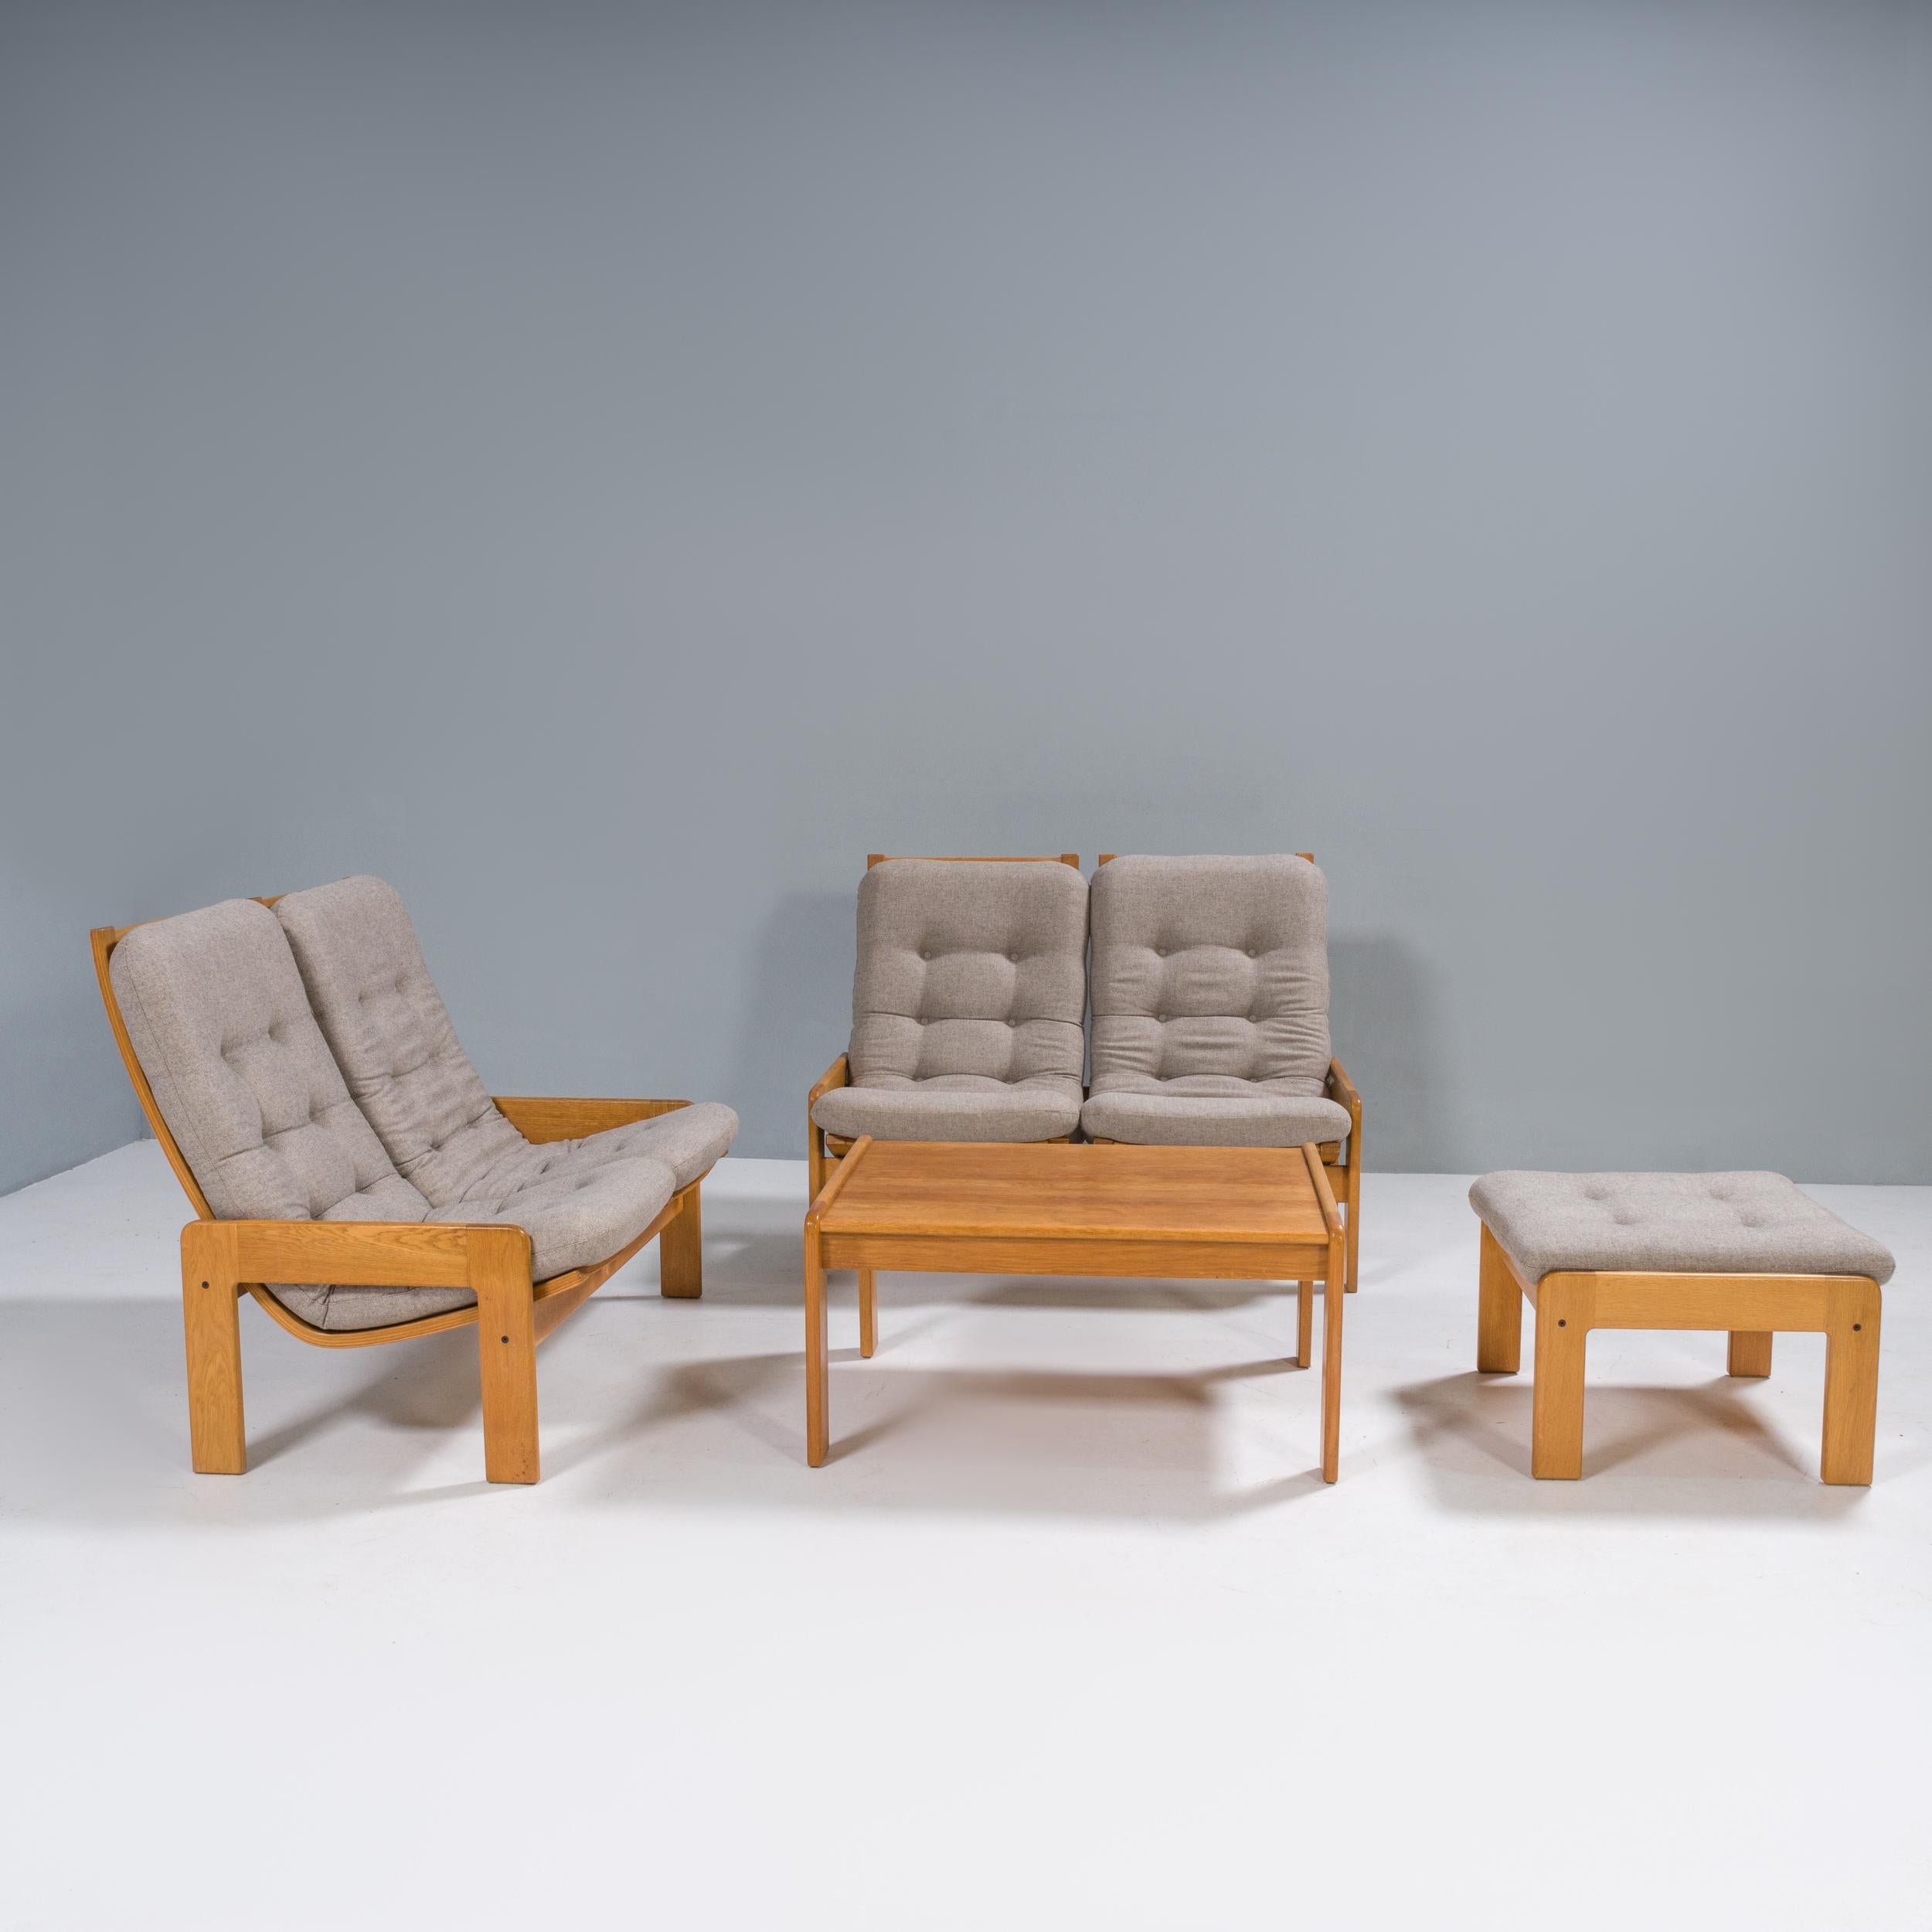 Yngve Ekström war eine der wichtigsten Persönlichkeiten in der Entwicklung der skandinavischen Moderne und Mitbegründer der Möbeldesignfirma Swedese.

Dieses Wohnzimmerset besteht aus zwei 2-sitzigen Sofas, einem passenden Hocker und einem